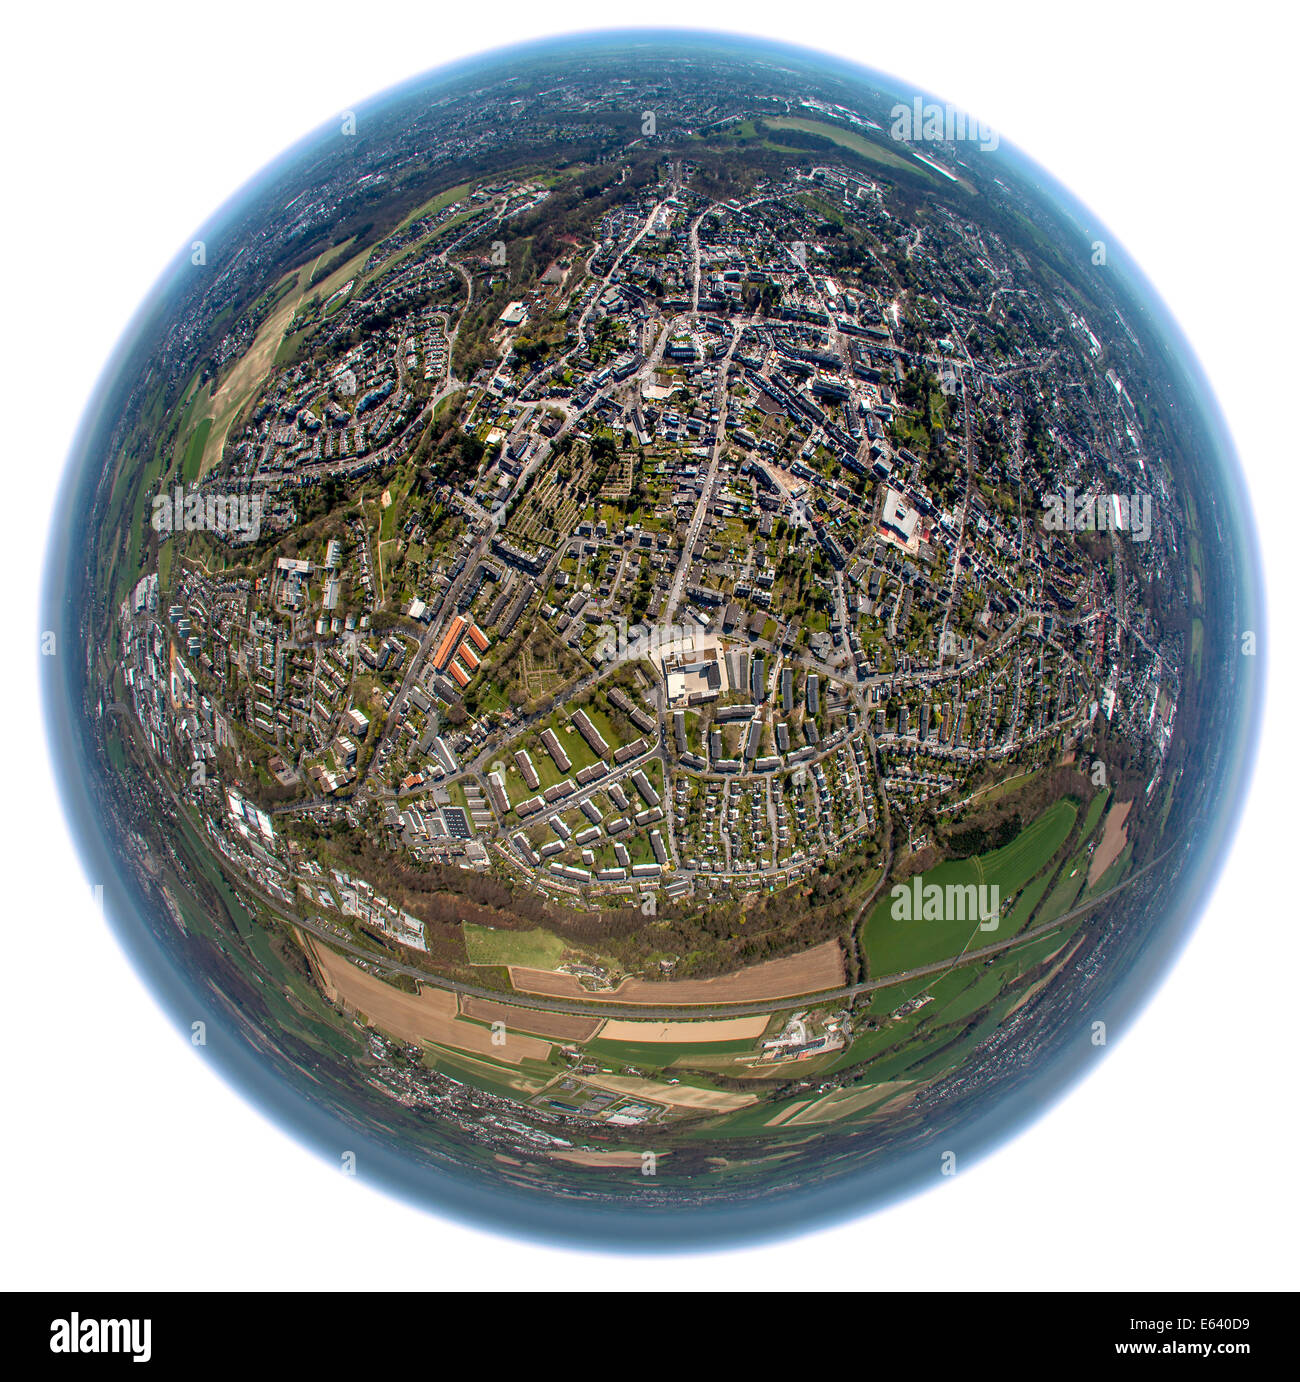 Luftbild schoss mit einem fisheye-Objektiv, Gruyten, Haan, Nordrhein-Westfalen, Deutschland Stockfoto